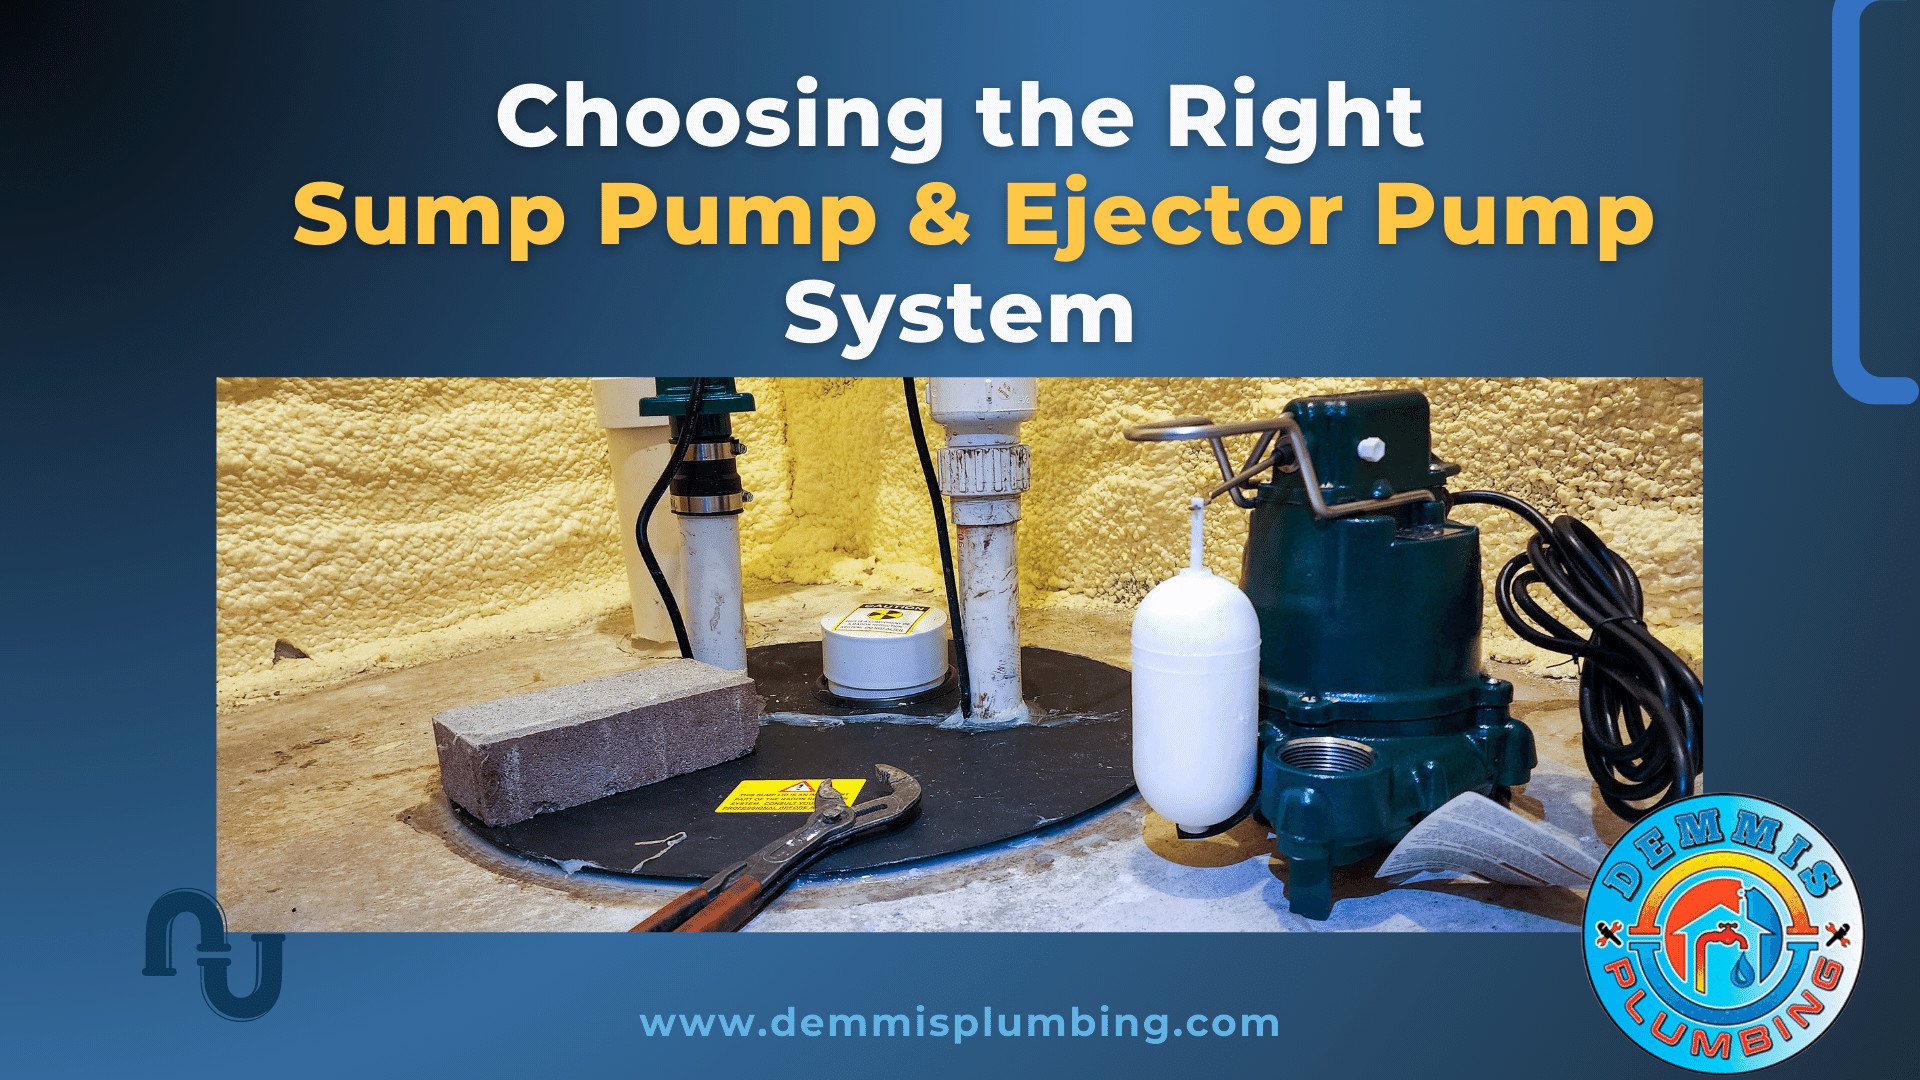 Sump Pump & Ejector Pump System